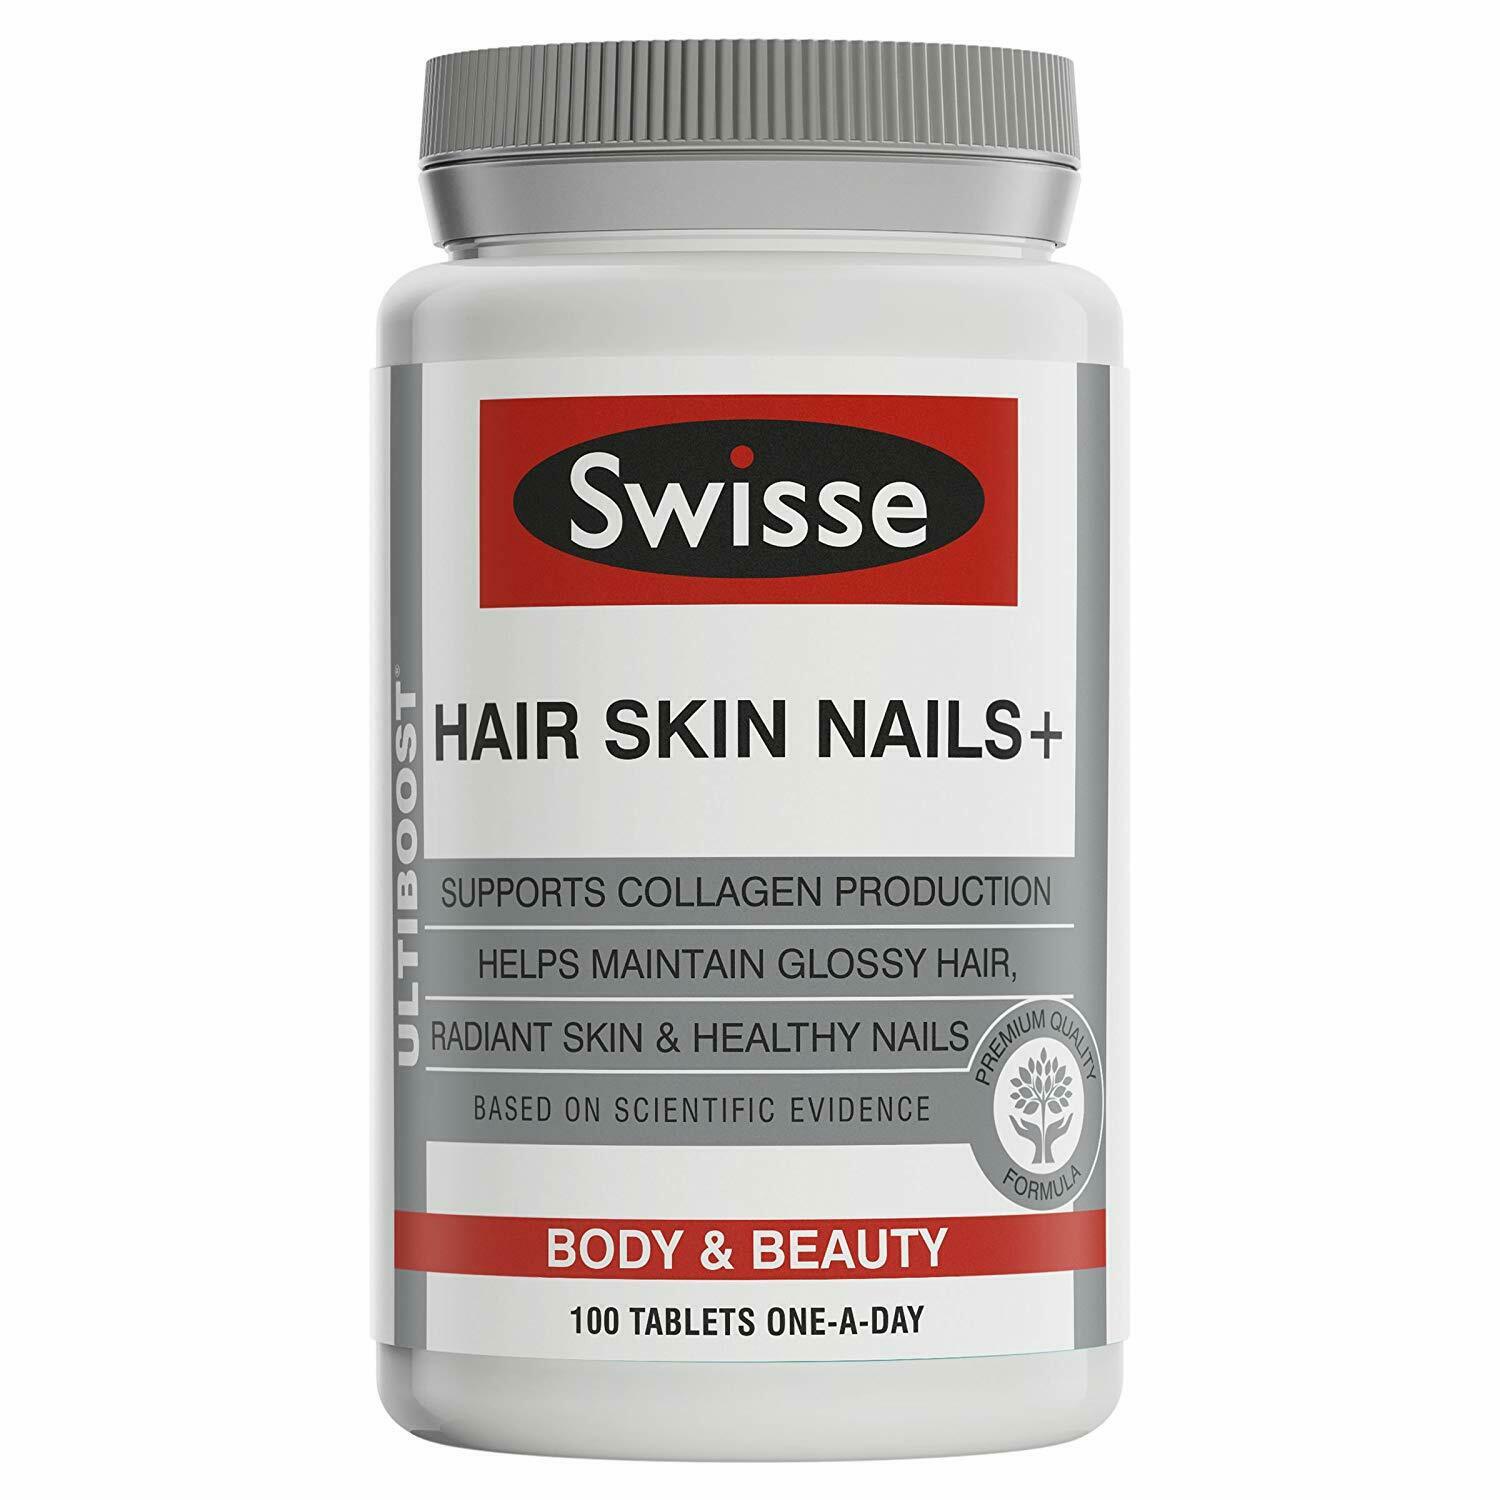 Swisse Ultiboost Hair Skin Nails+ Body & Beauty - 100 talets